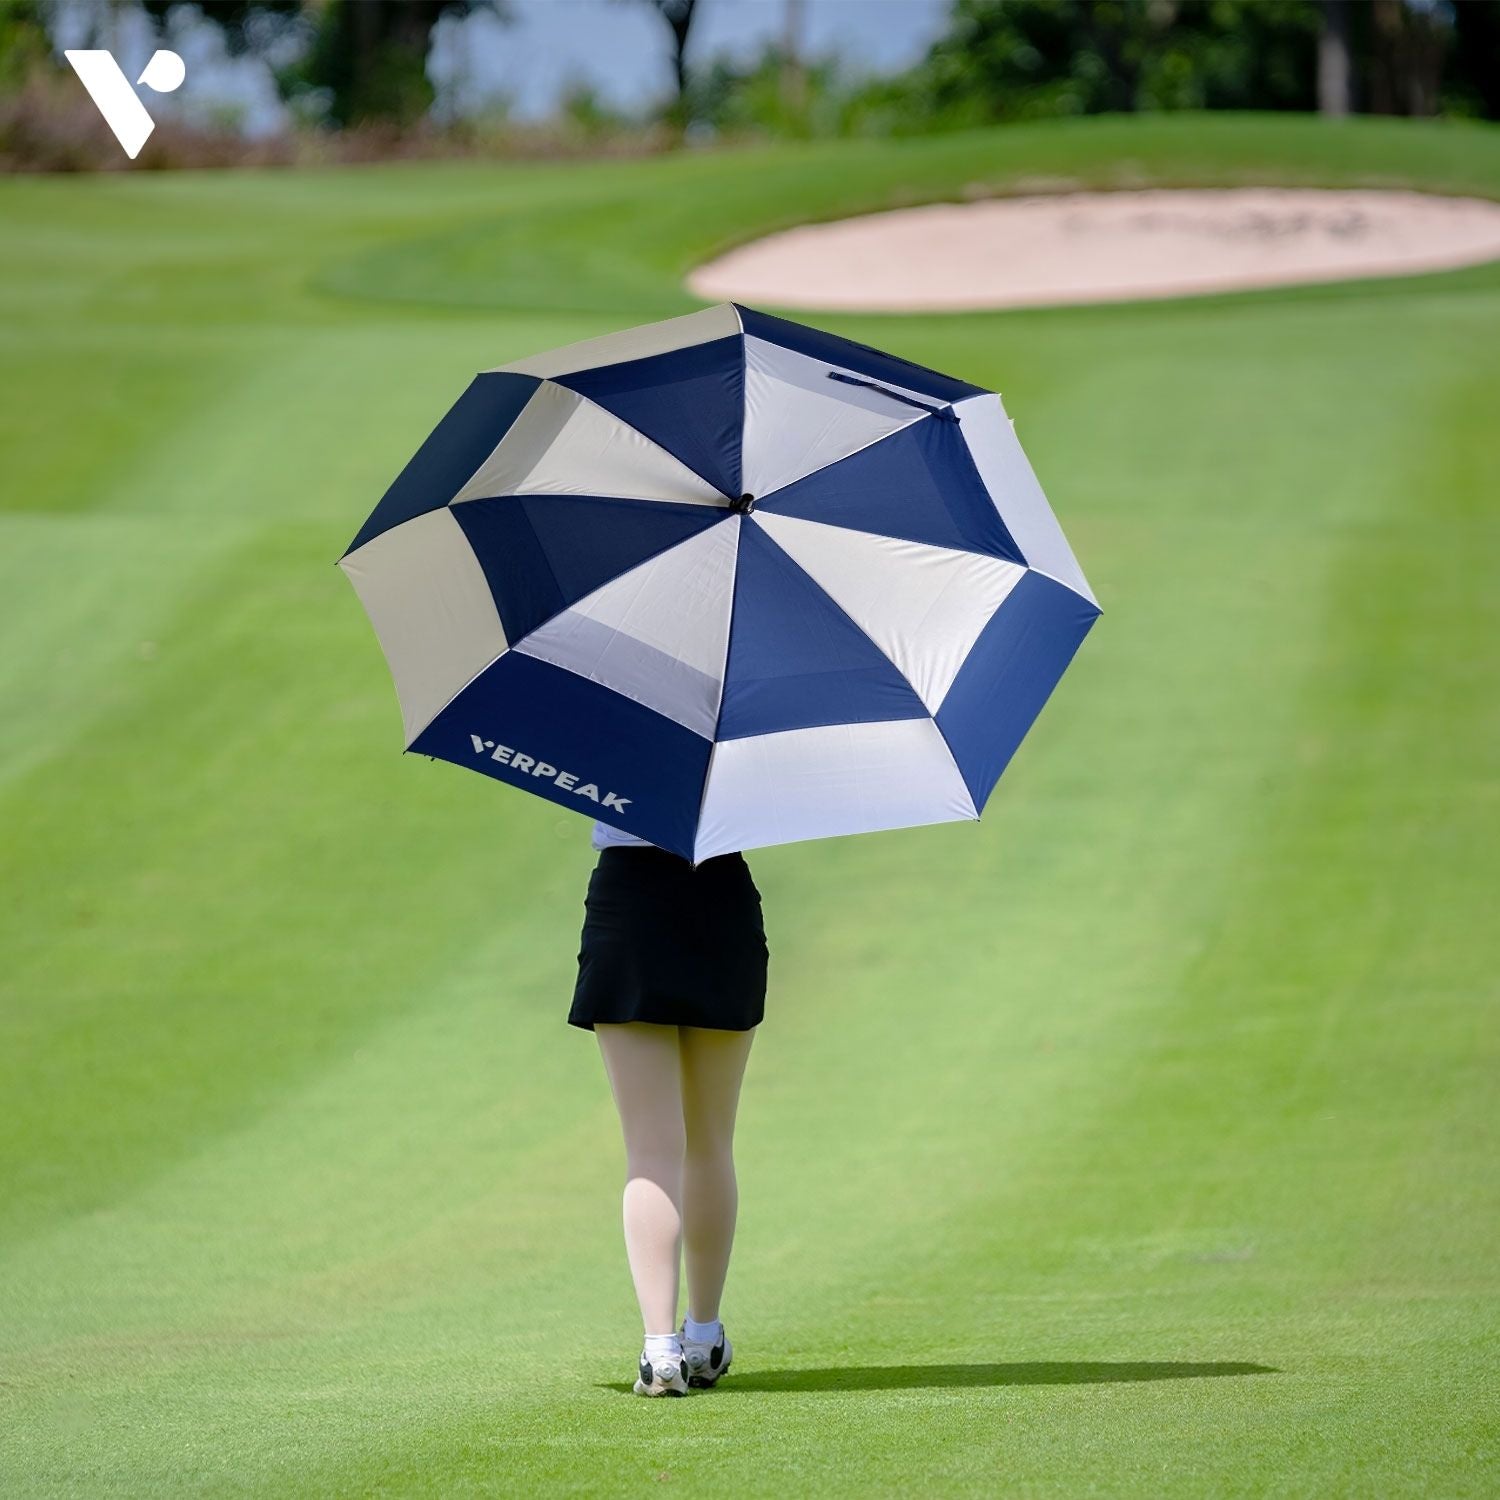 Verpeak Golf Umbrella Blue & White 62"